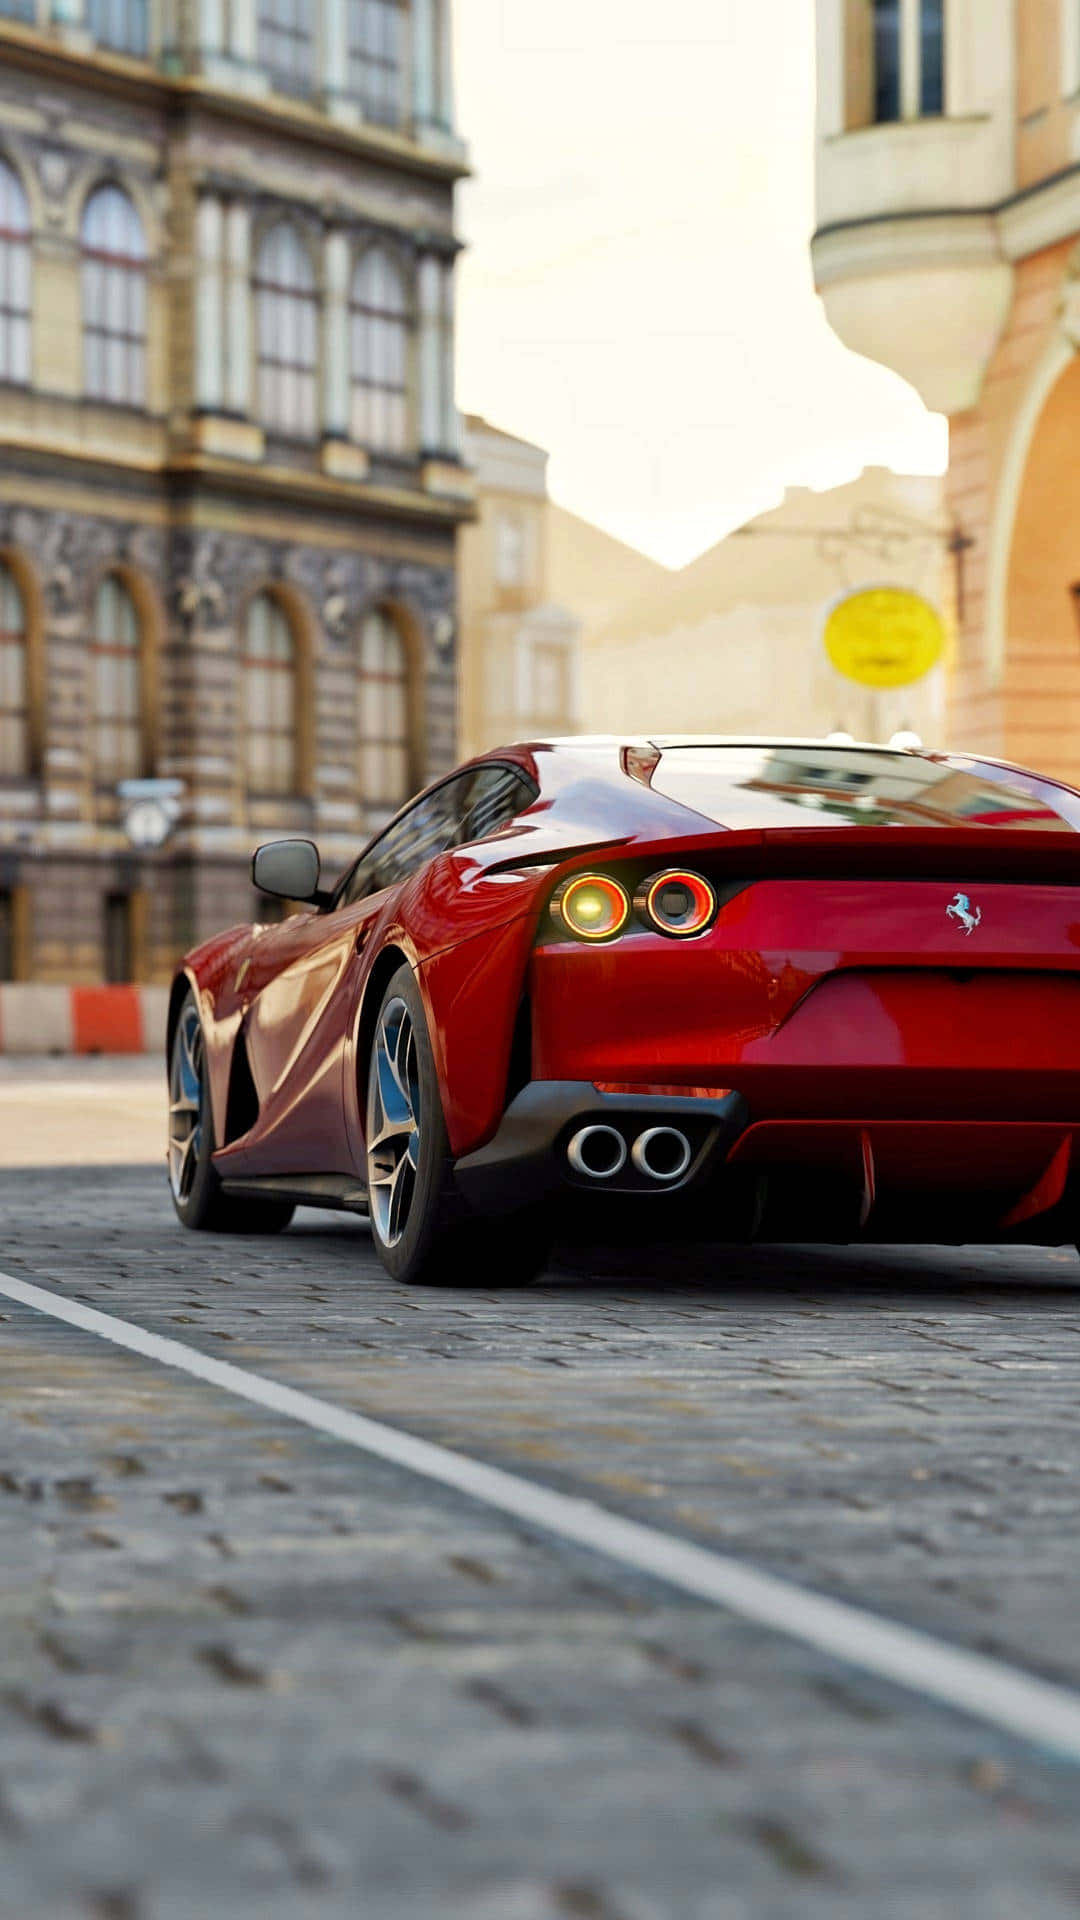 Ferrarif12tdi - En Röd Sportbil På En Stadsgata